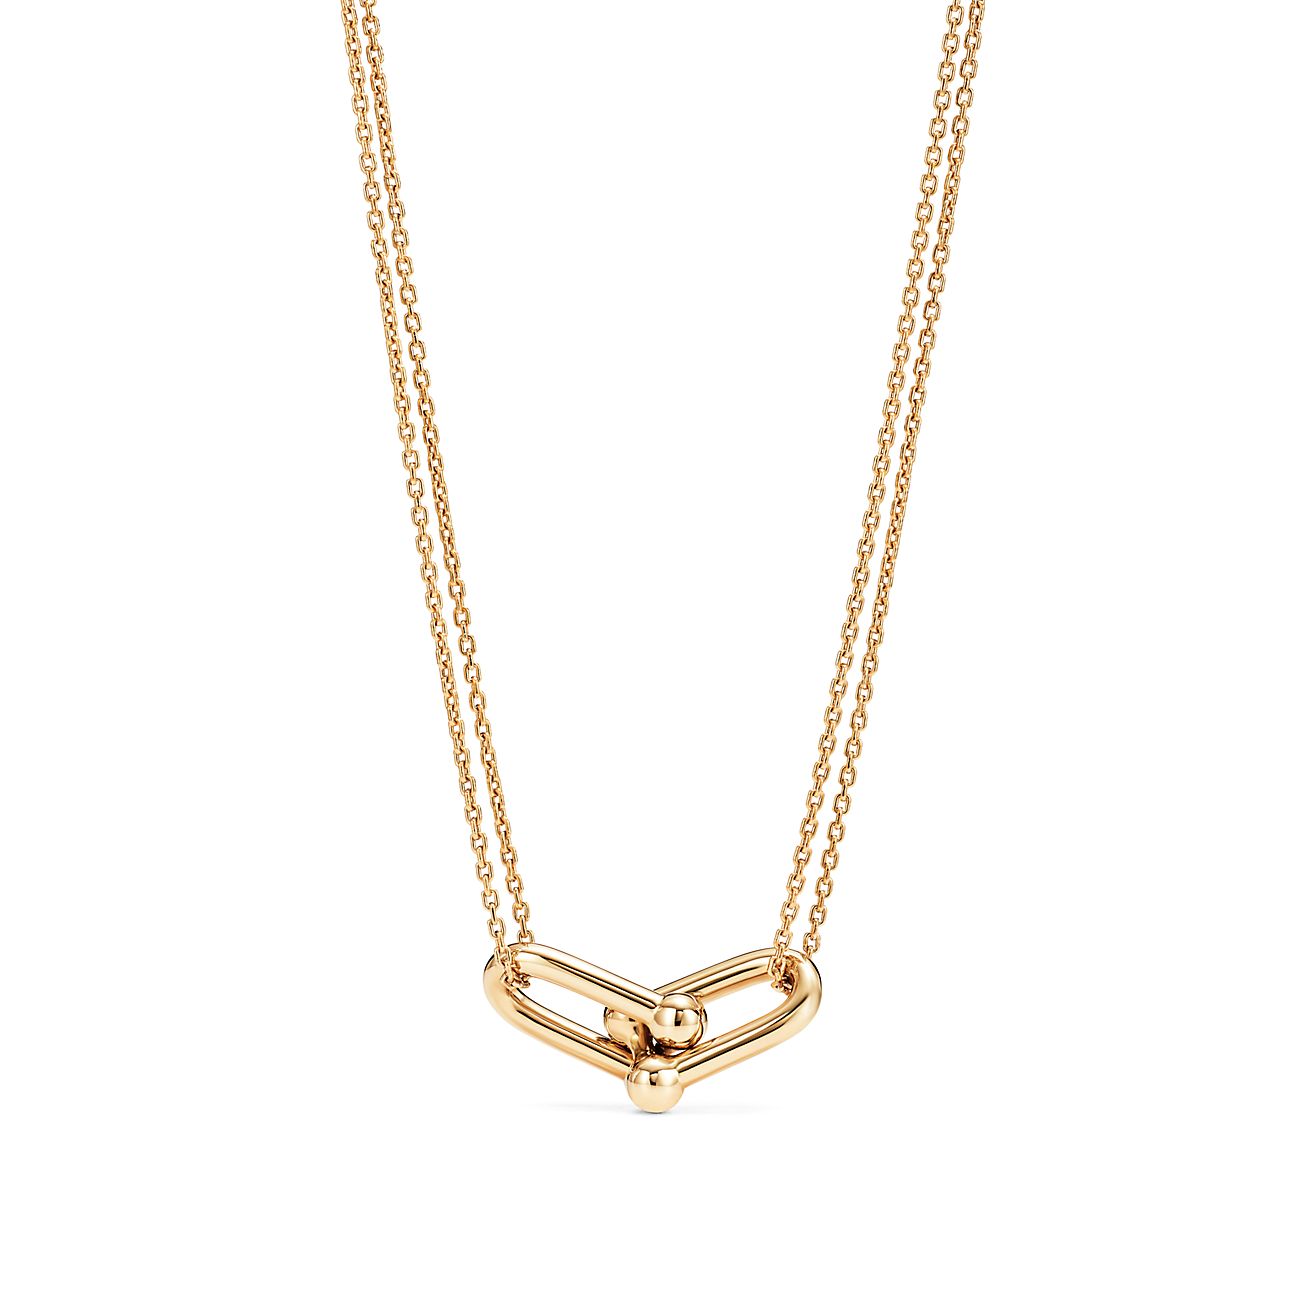 Tiffany HardWear double link pendant in 18k gold. | Tiffany & Co.